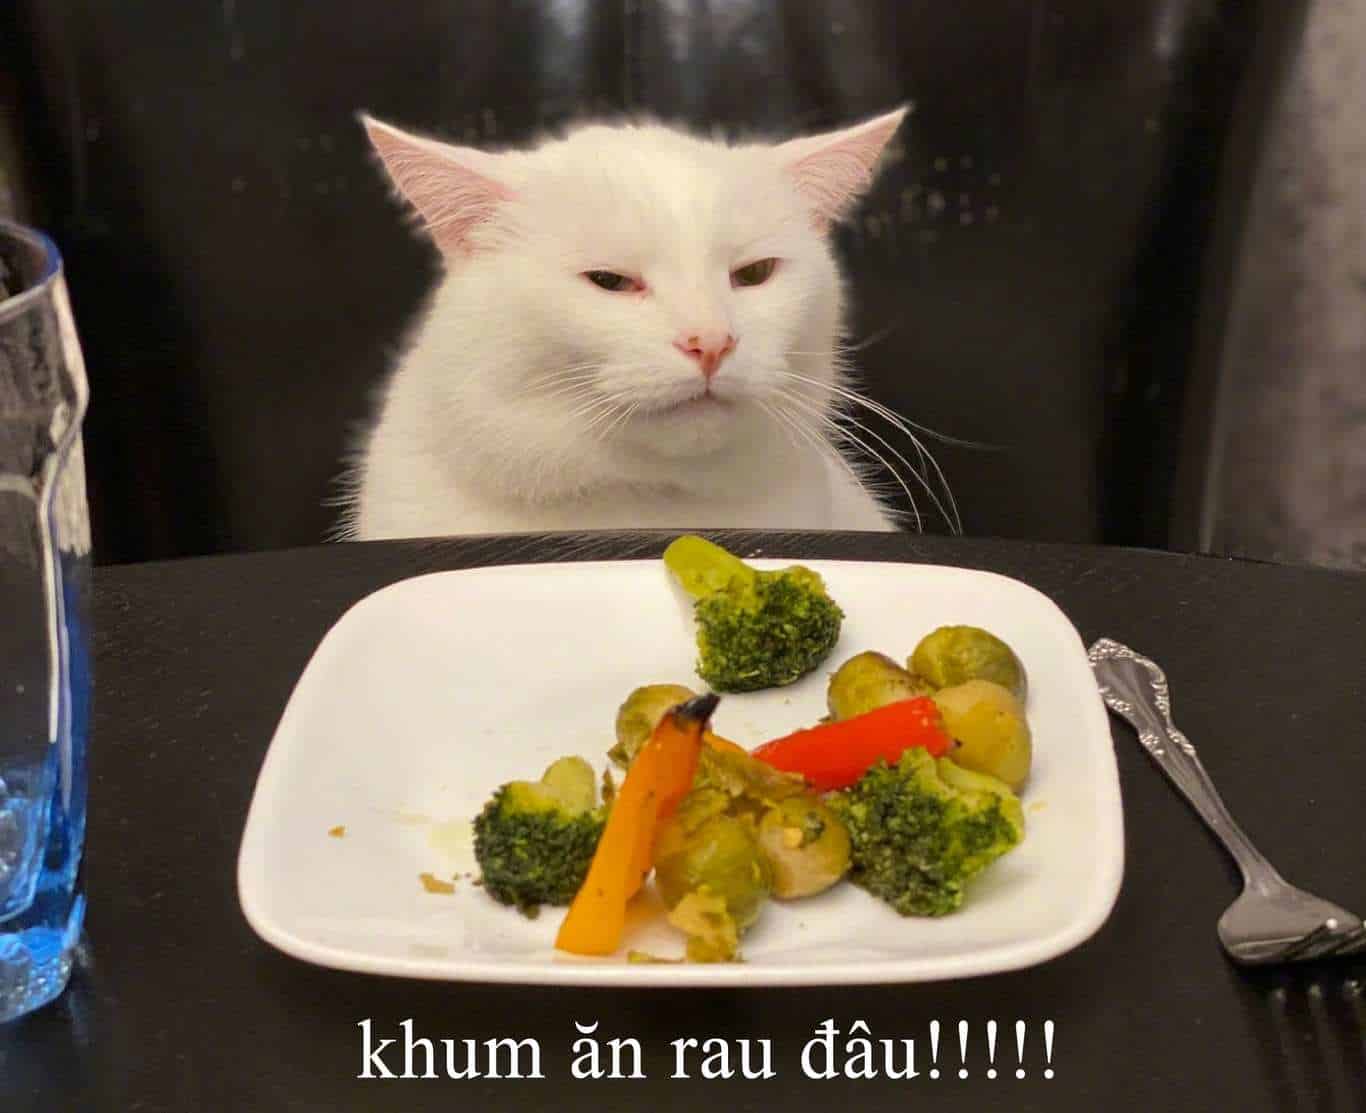 Chia sẻ hình ảnh mèo ăn rau vui nhộn